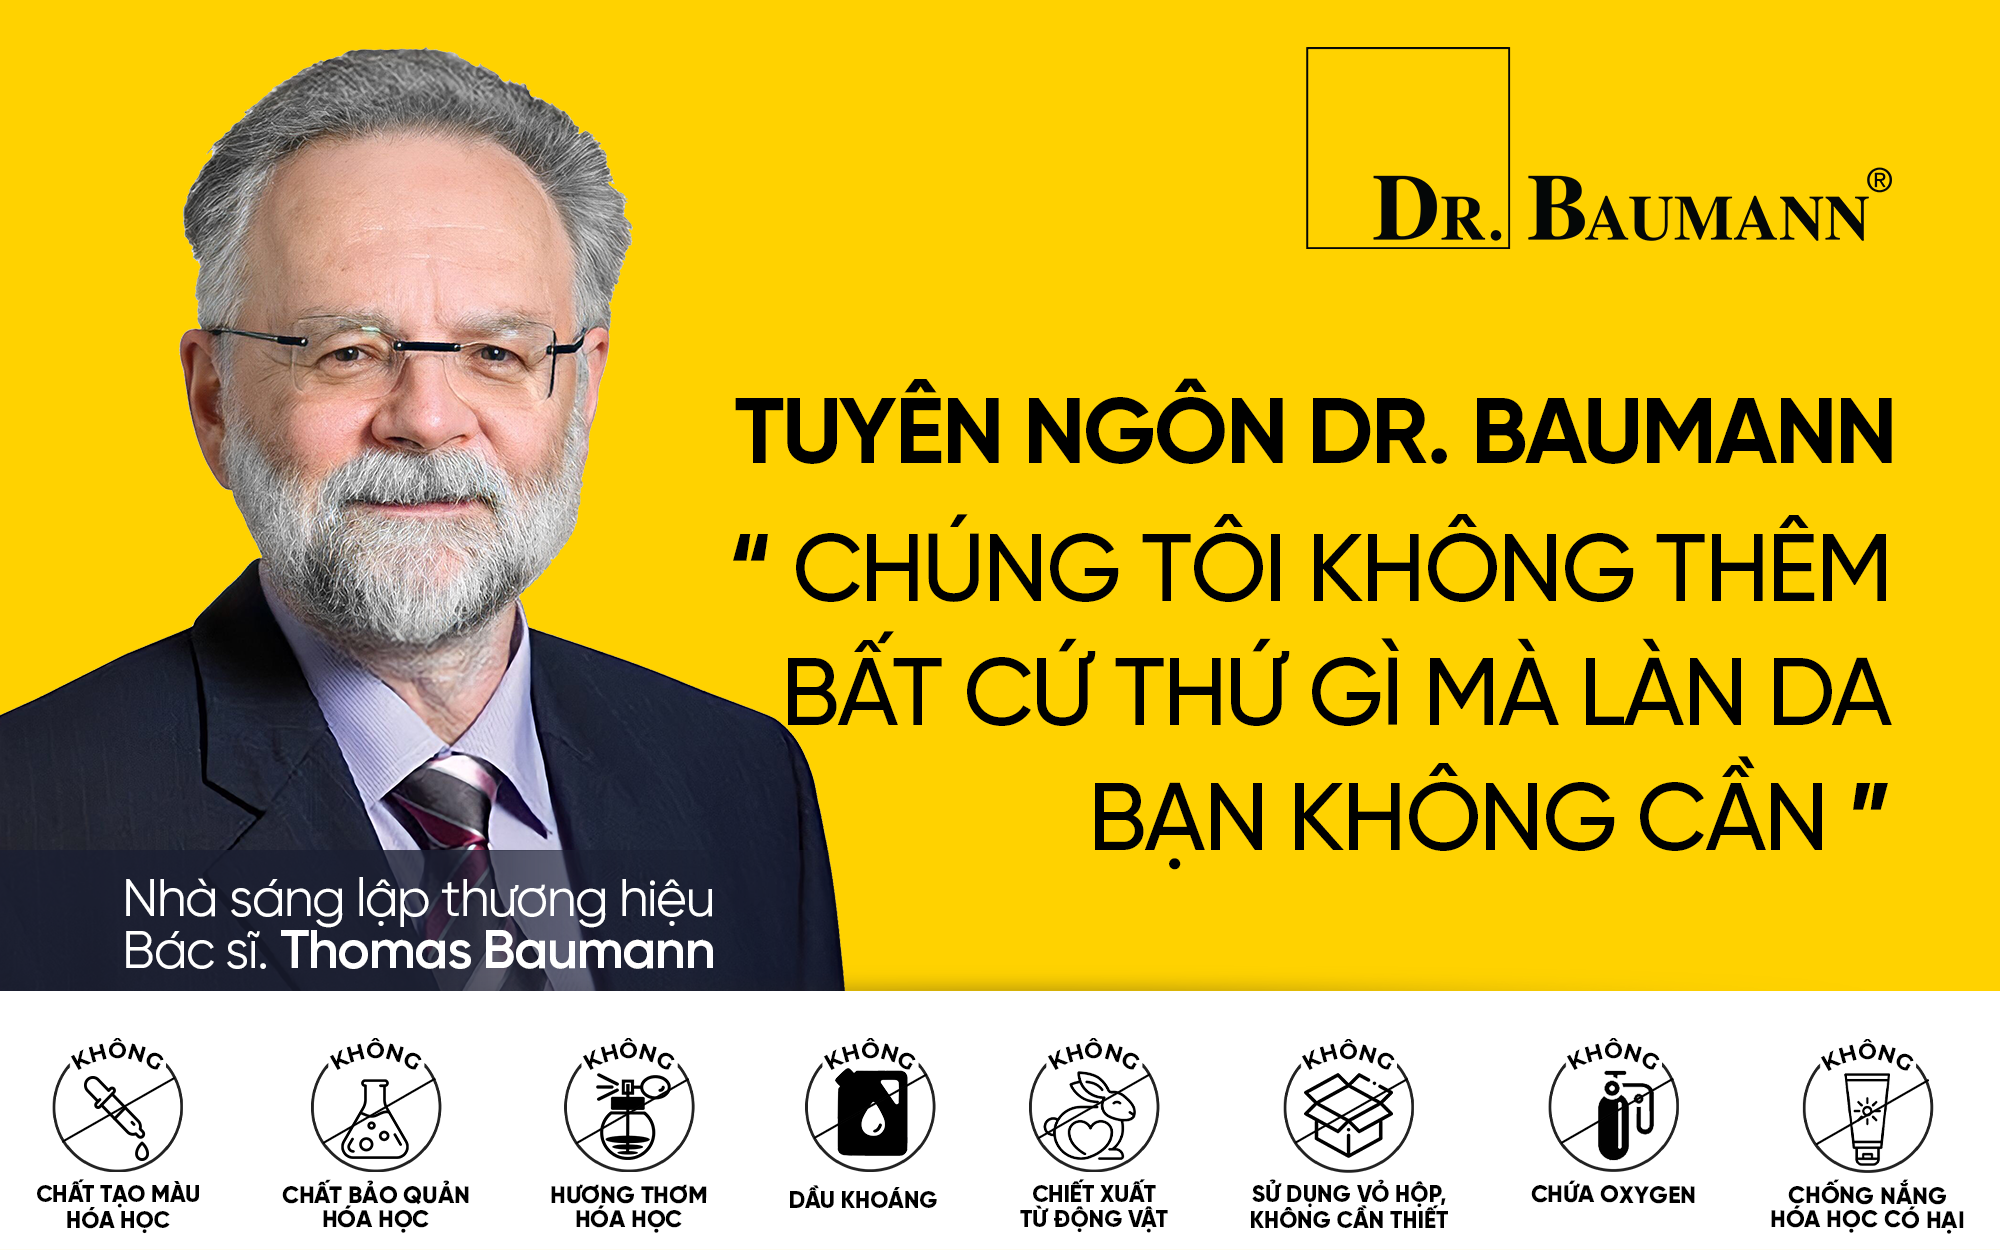 Review kem chống nắng Dr. Baumann Sun Lotion Factor 25 mà Sơn Tùng M-TP sử dụng trên Tiktok - 3